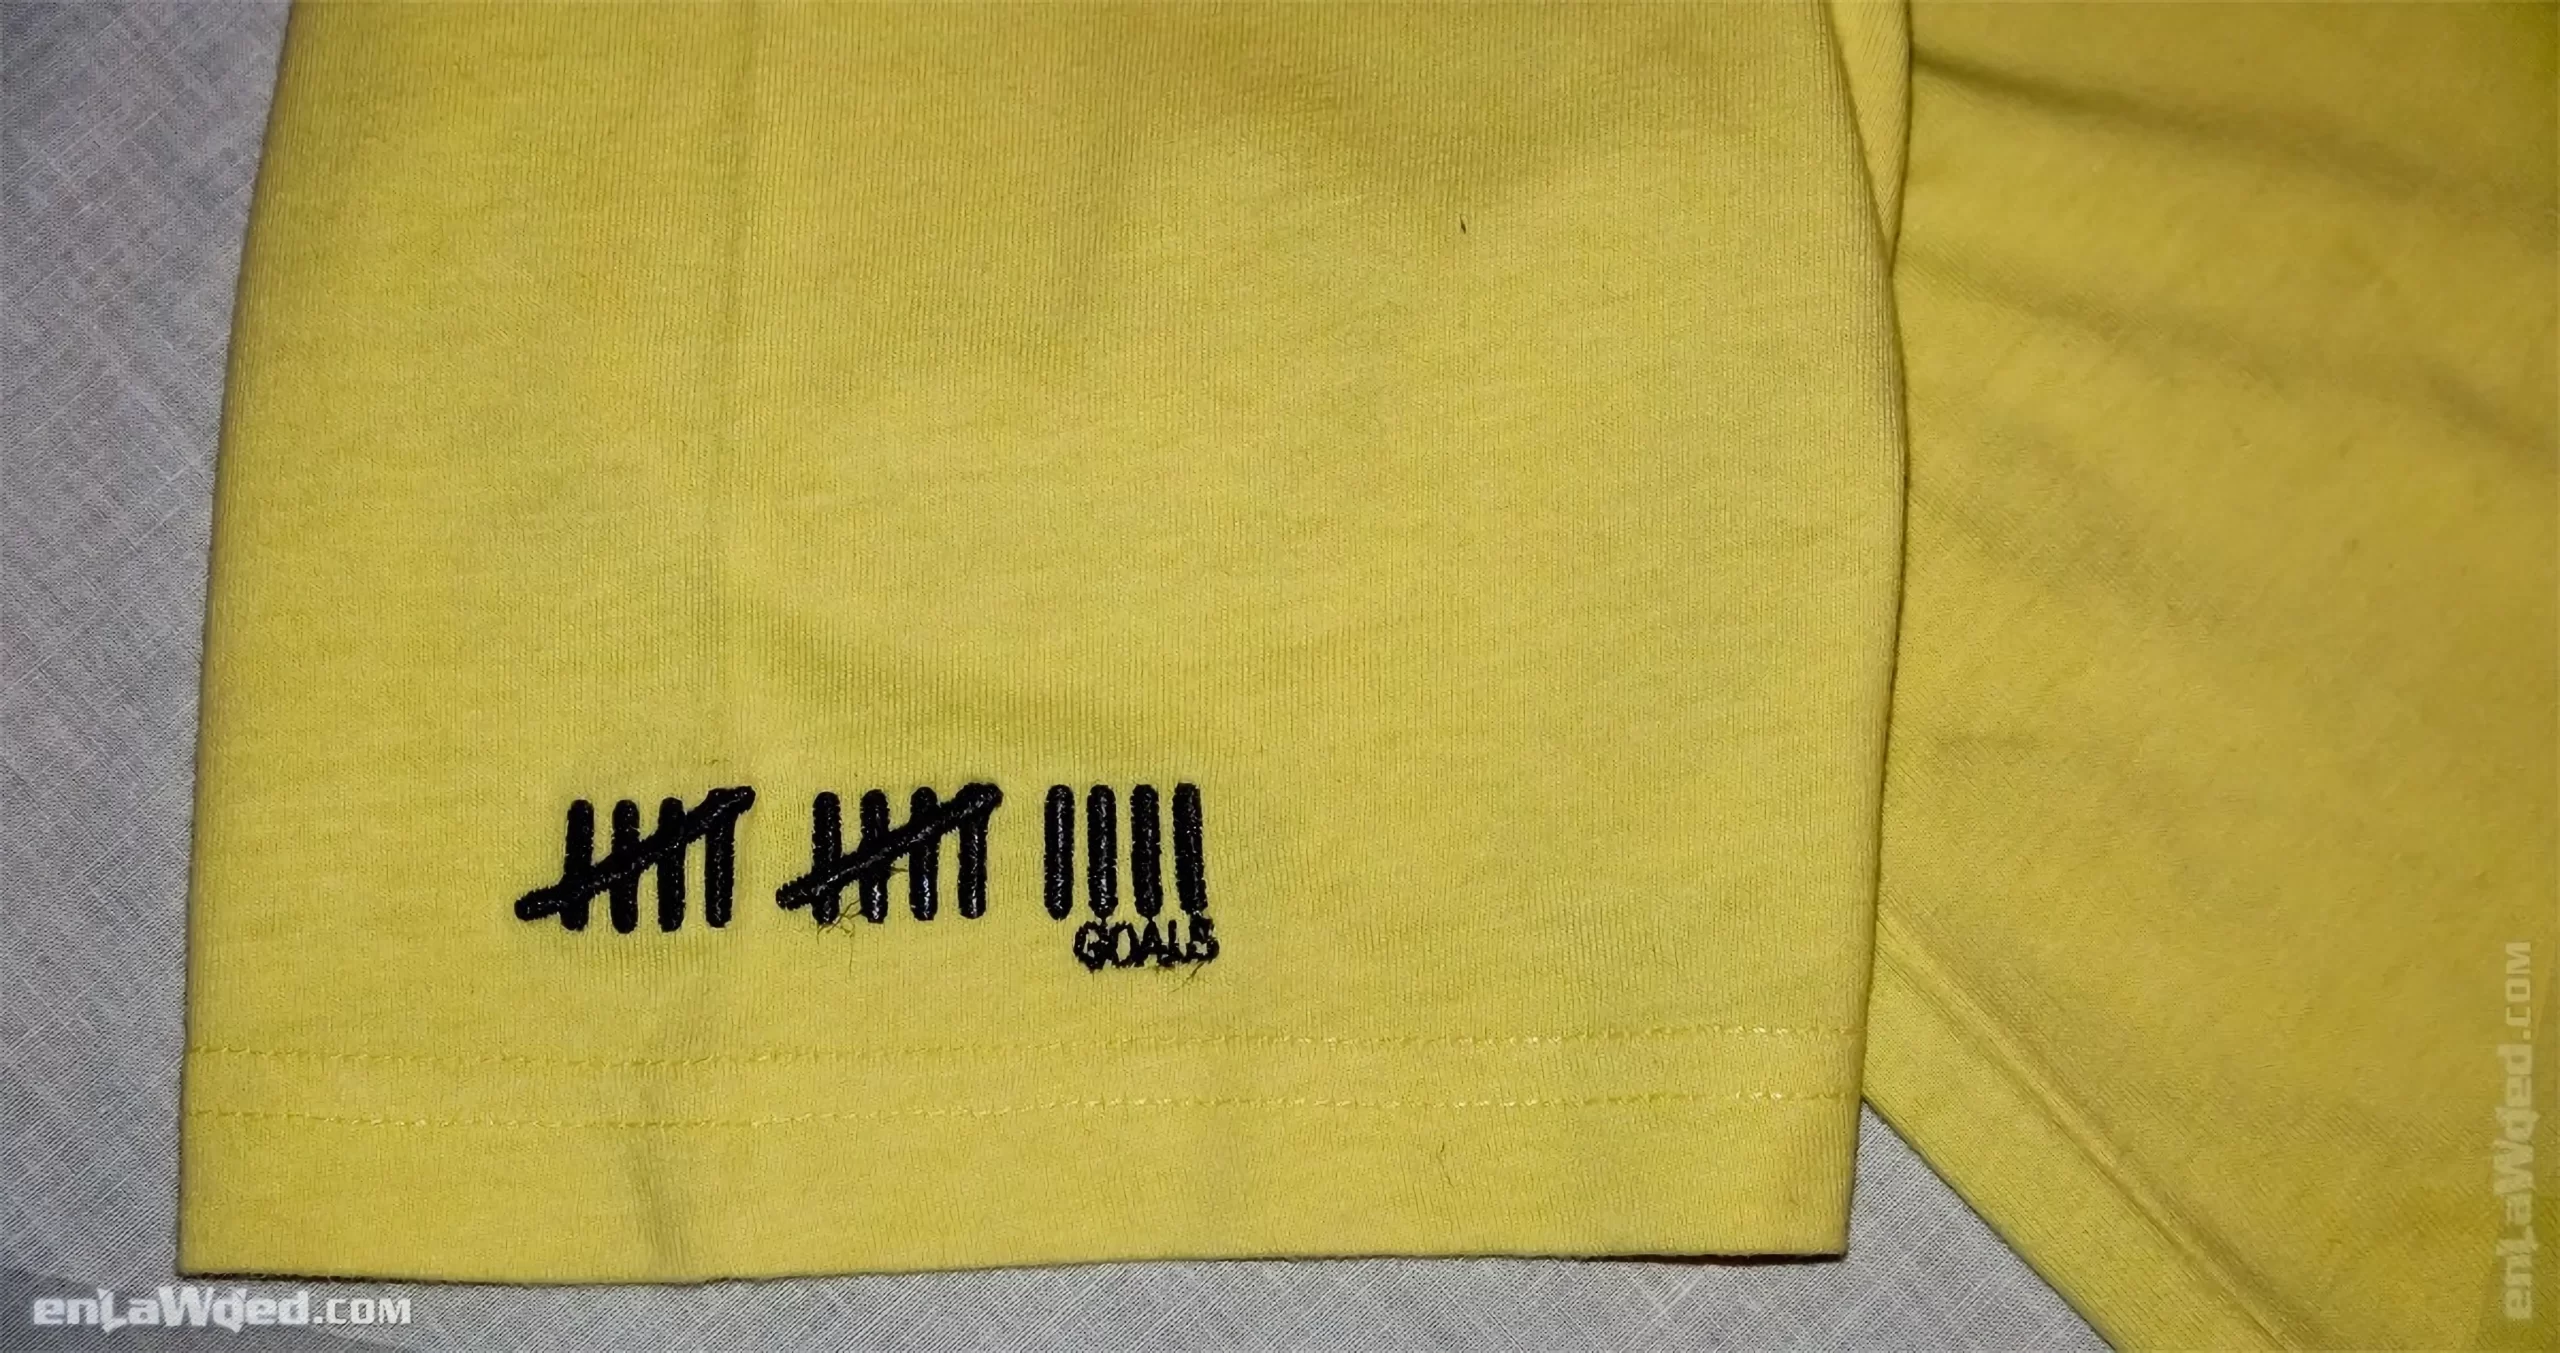 Men’s 2006 Gerd Müller Player’s Club T-Shirt by Adidas: Erfolgsbilanz (EnLawded.com file #lmchekmvipnv2gu58m)